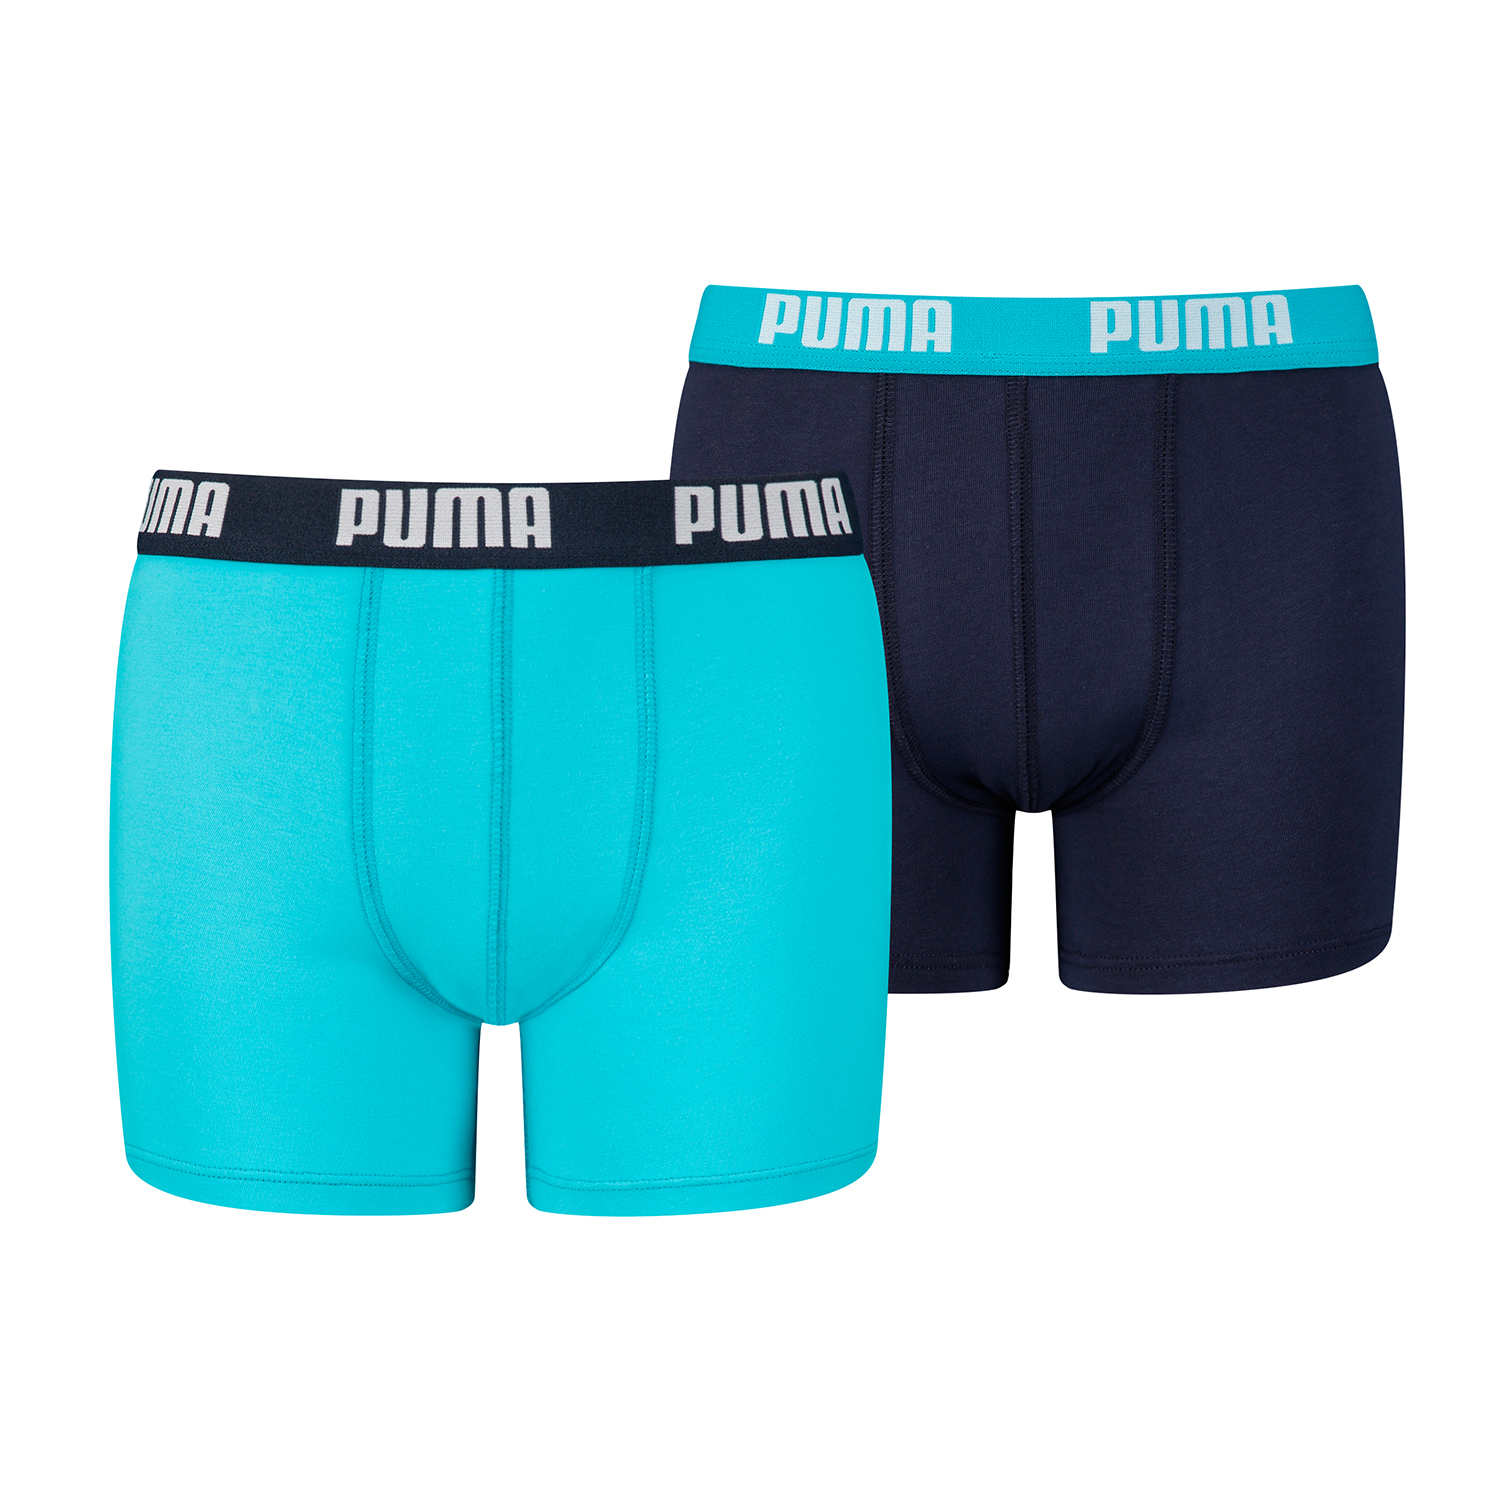 2 er Pack Puma Boxer Boxershorts Jungen Kinder Unterhose Unterwäsche